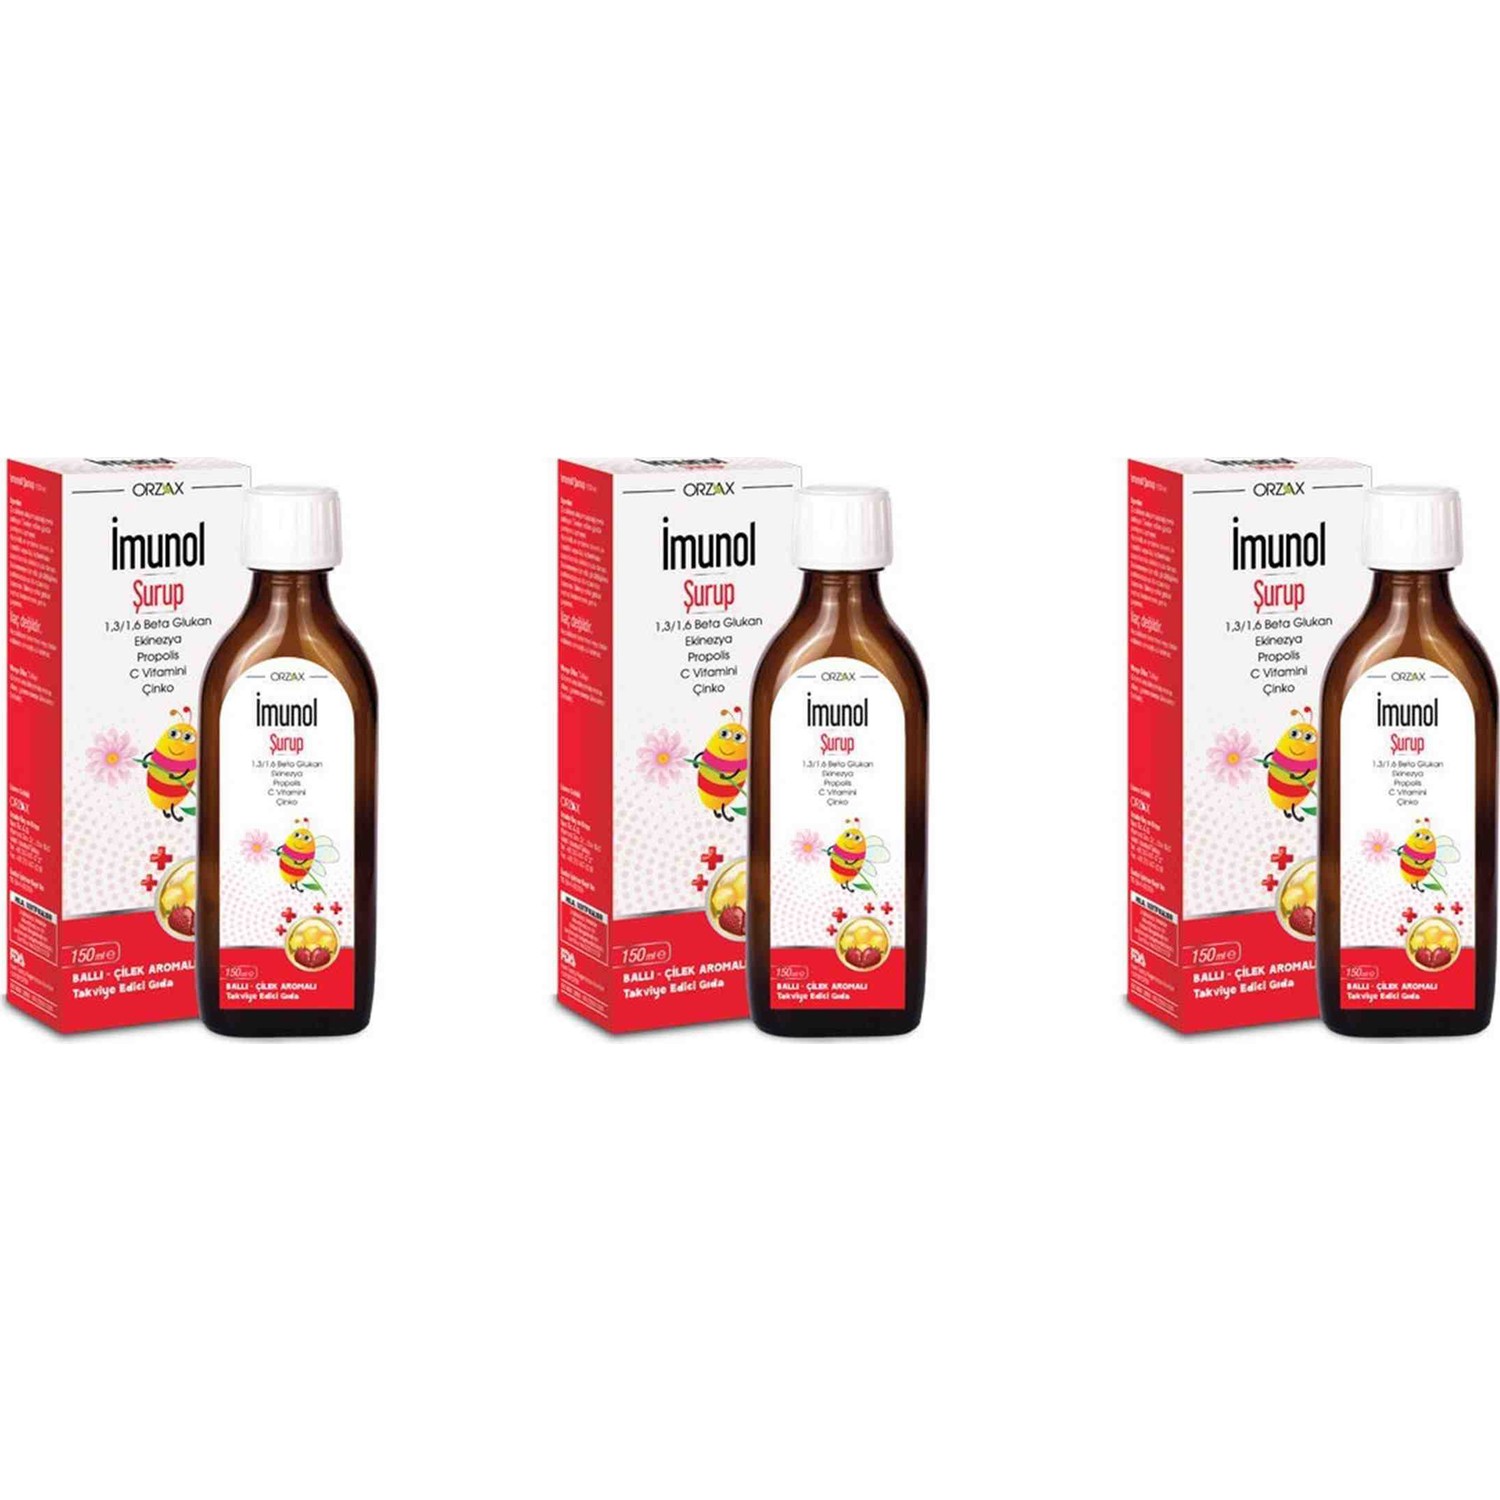 Сироп имунол Orzax с медово-клубничным вкусом, 3 упаковки по 150 мл имунол бузинный сироп orzax 3 упаковки по 150 мл